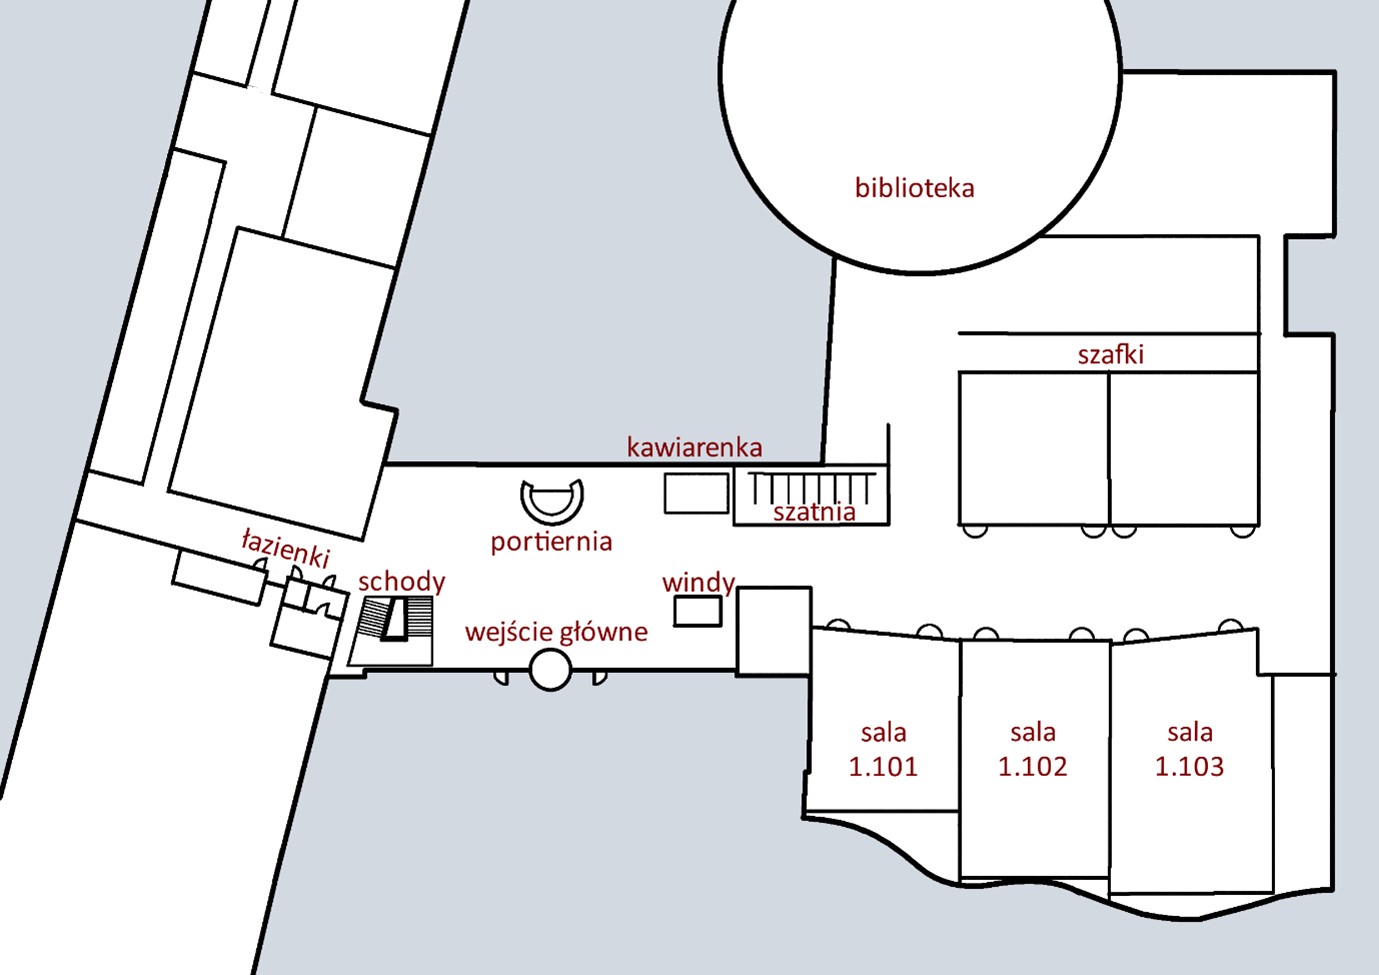 Mapa parteru z oznaczonymi wejściem głównym, portiernią, kawiarenką, łazienkami, schodami, windami, szafkami, szatniami, salami 1.101, 1.102, 1.103 i biblioteką.